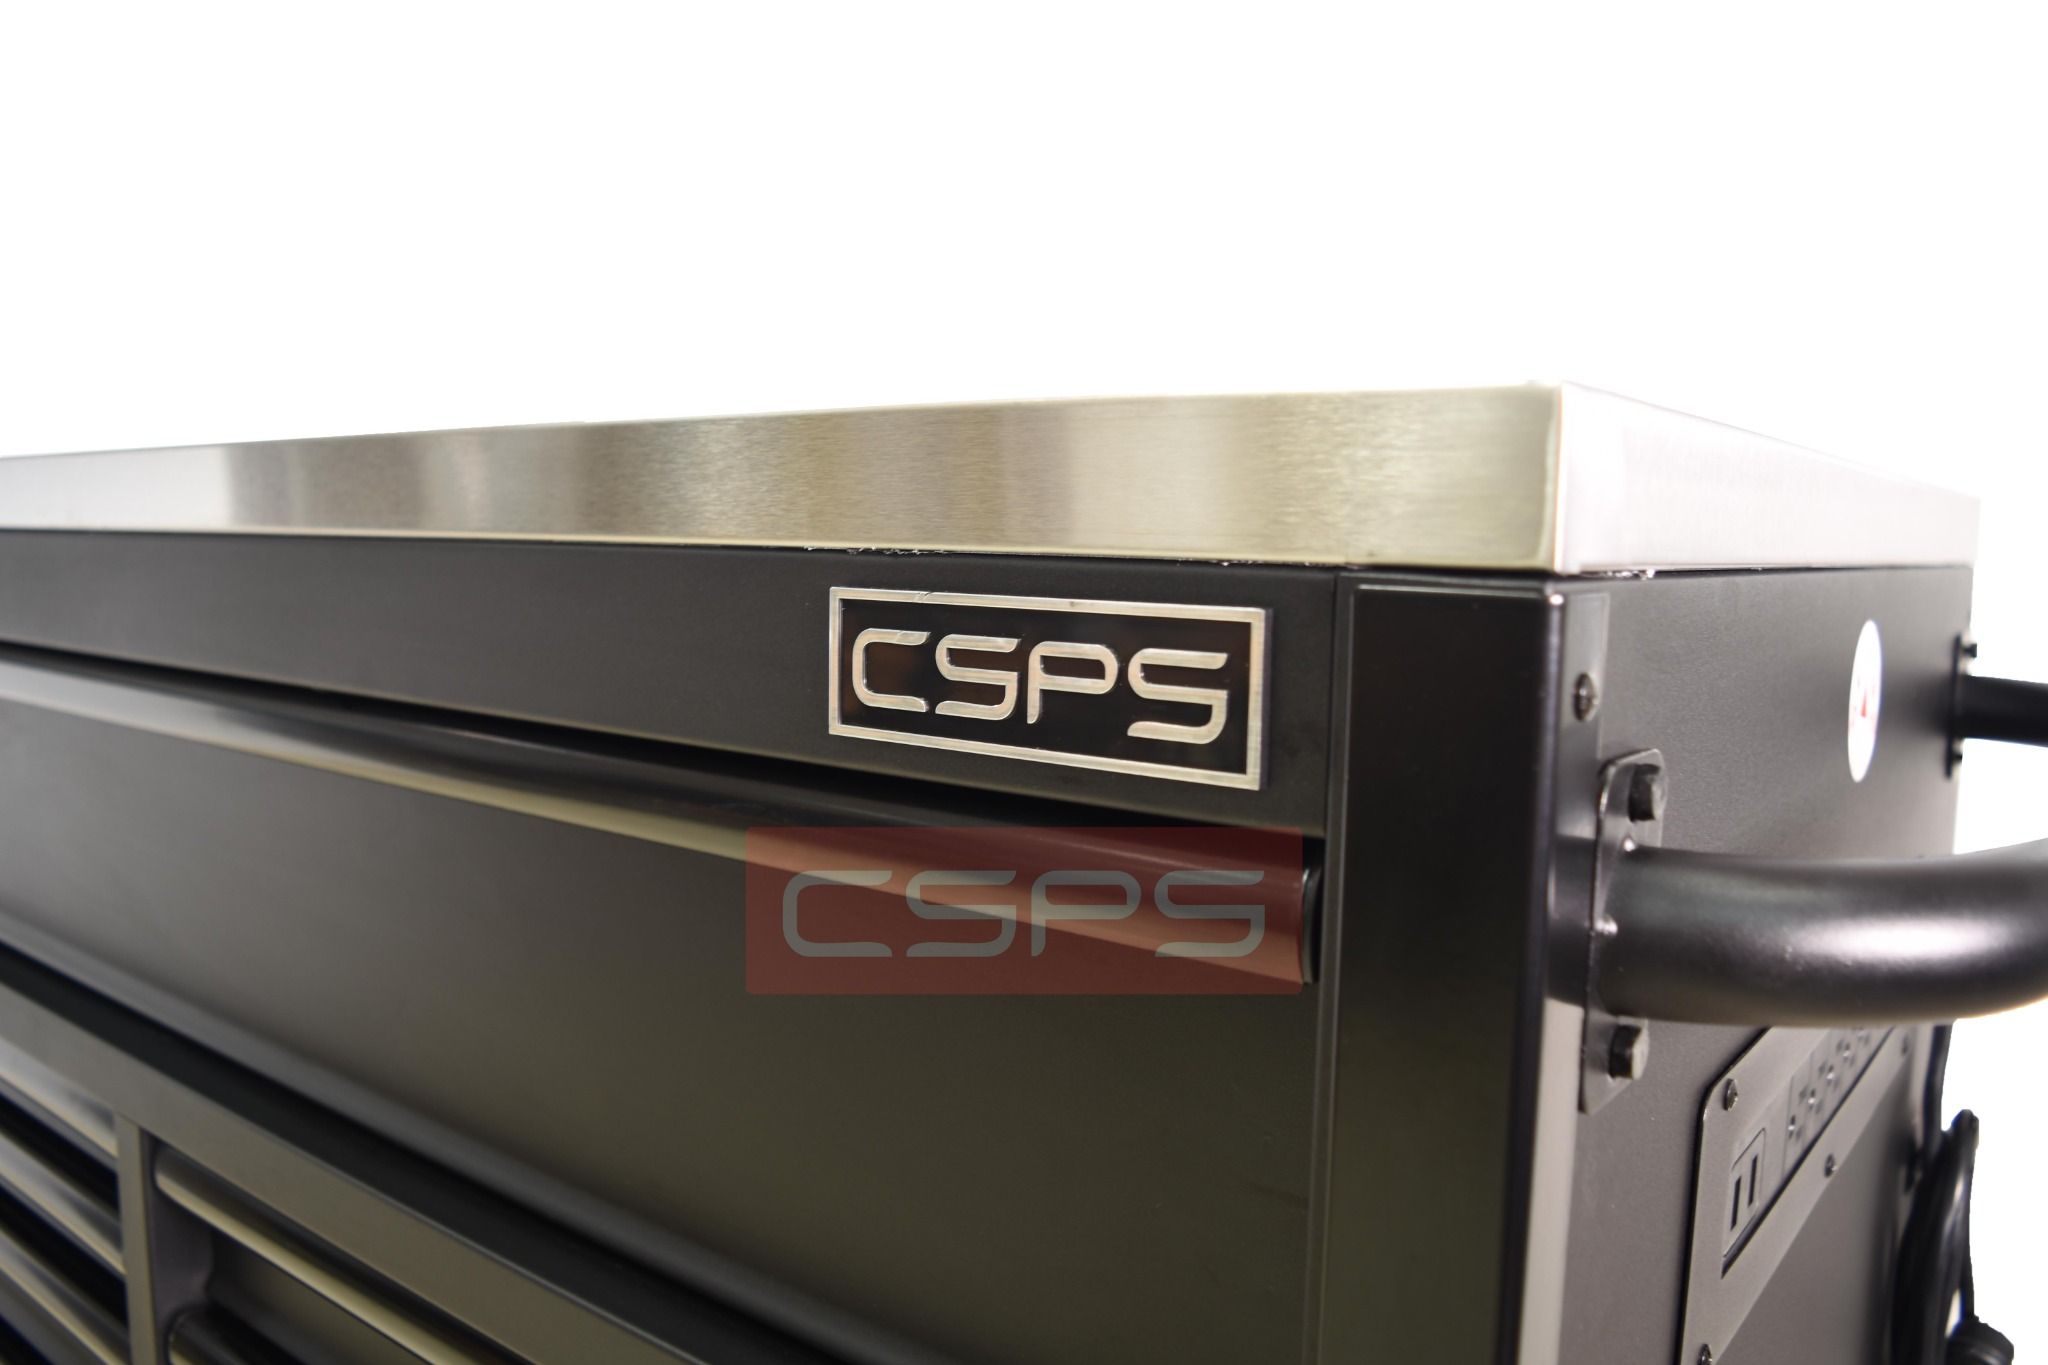  Tủ dụng cụ CSPS 155cm - 10 hộc kéo màu đen 